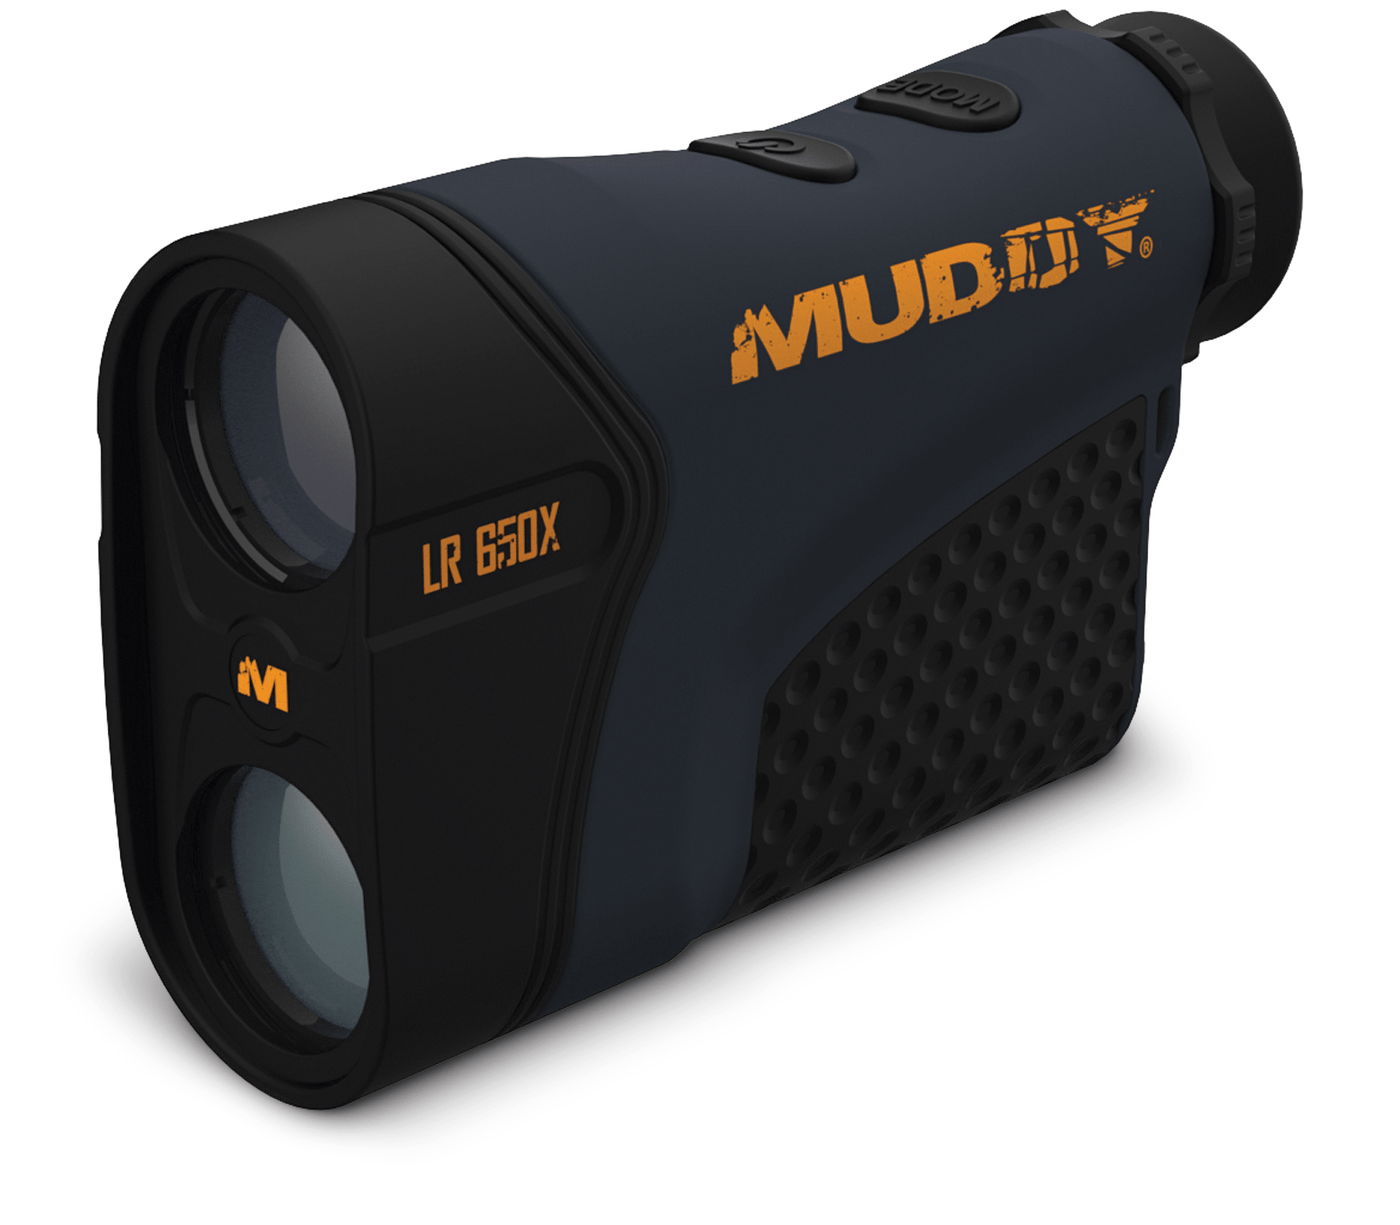 Muddy Muddy 650 W Hd, Muddy Mud-lr650x  Muddy Range Finder  650 W Hd Optics